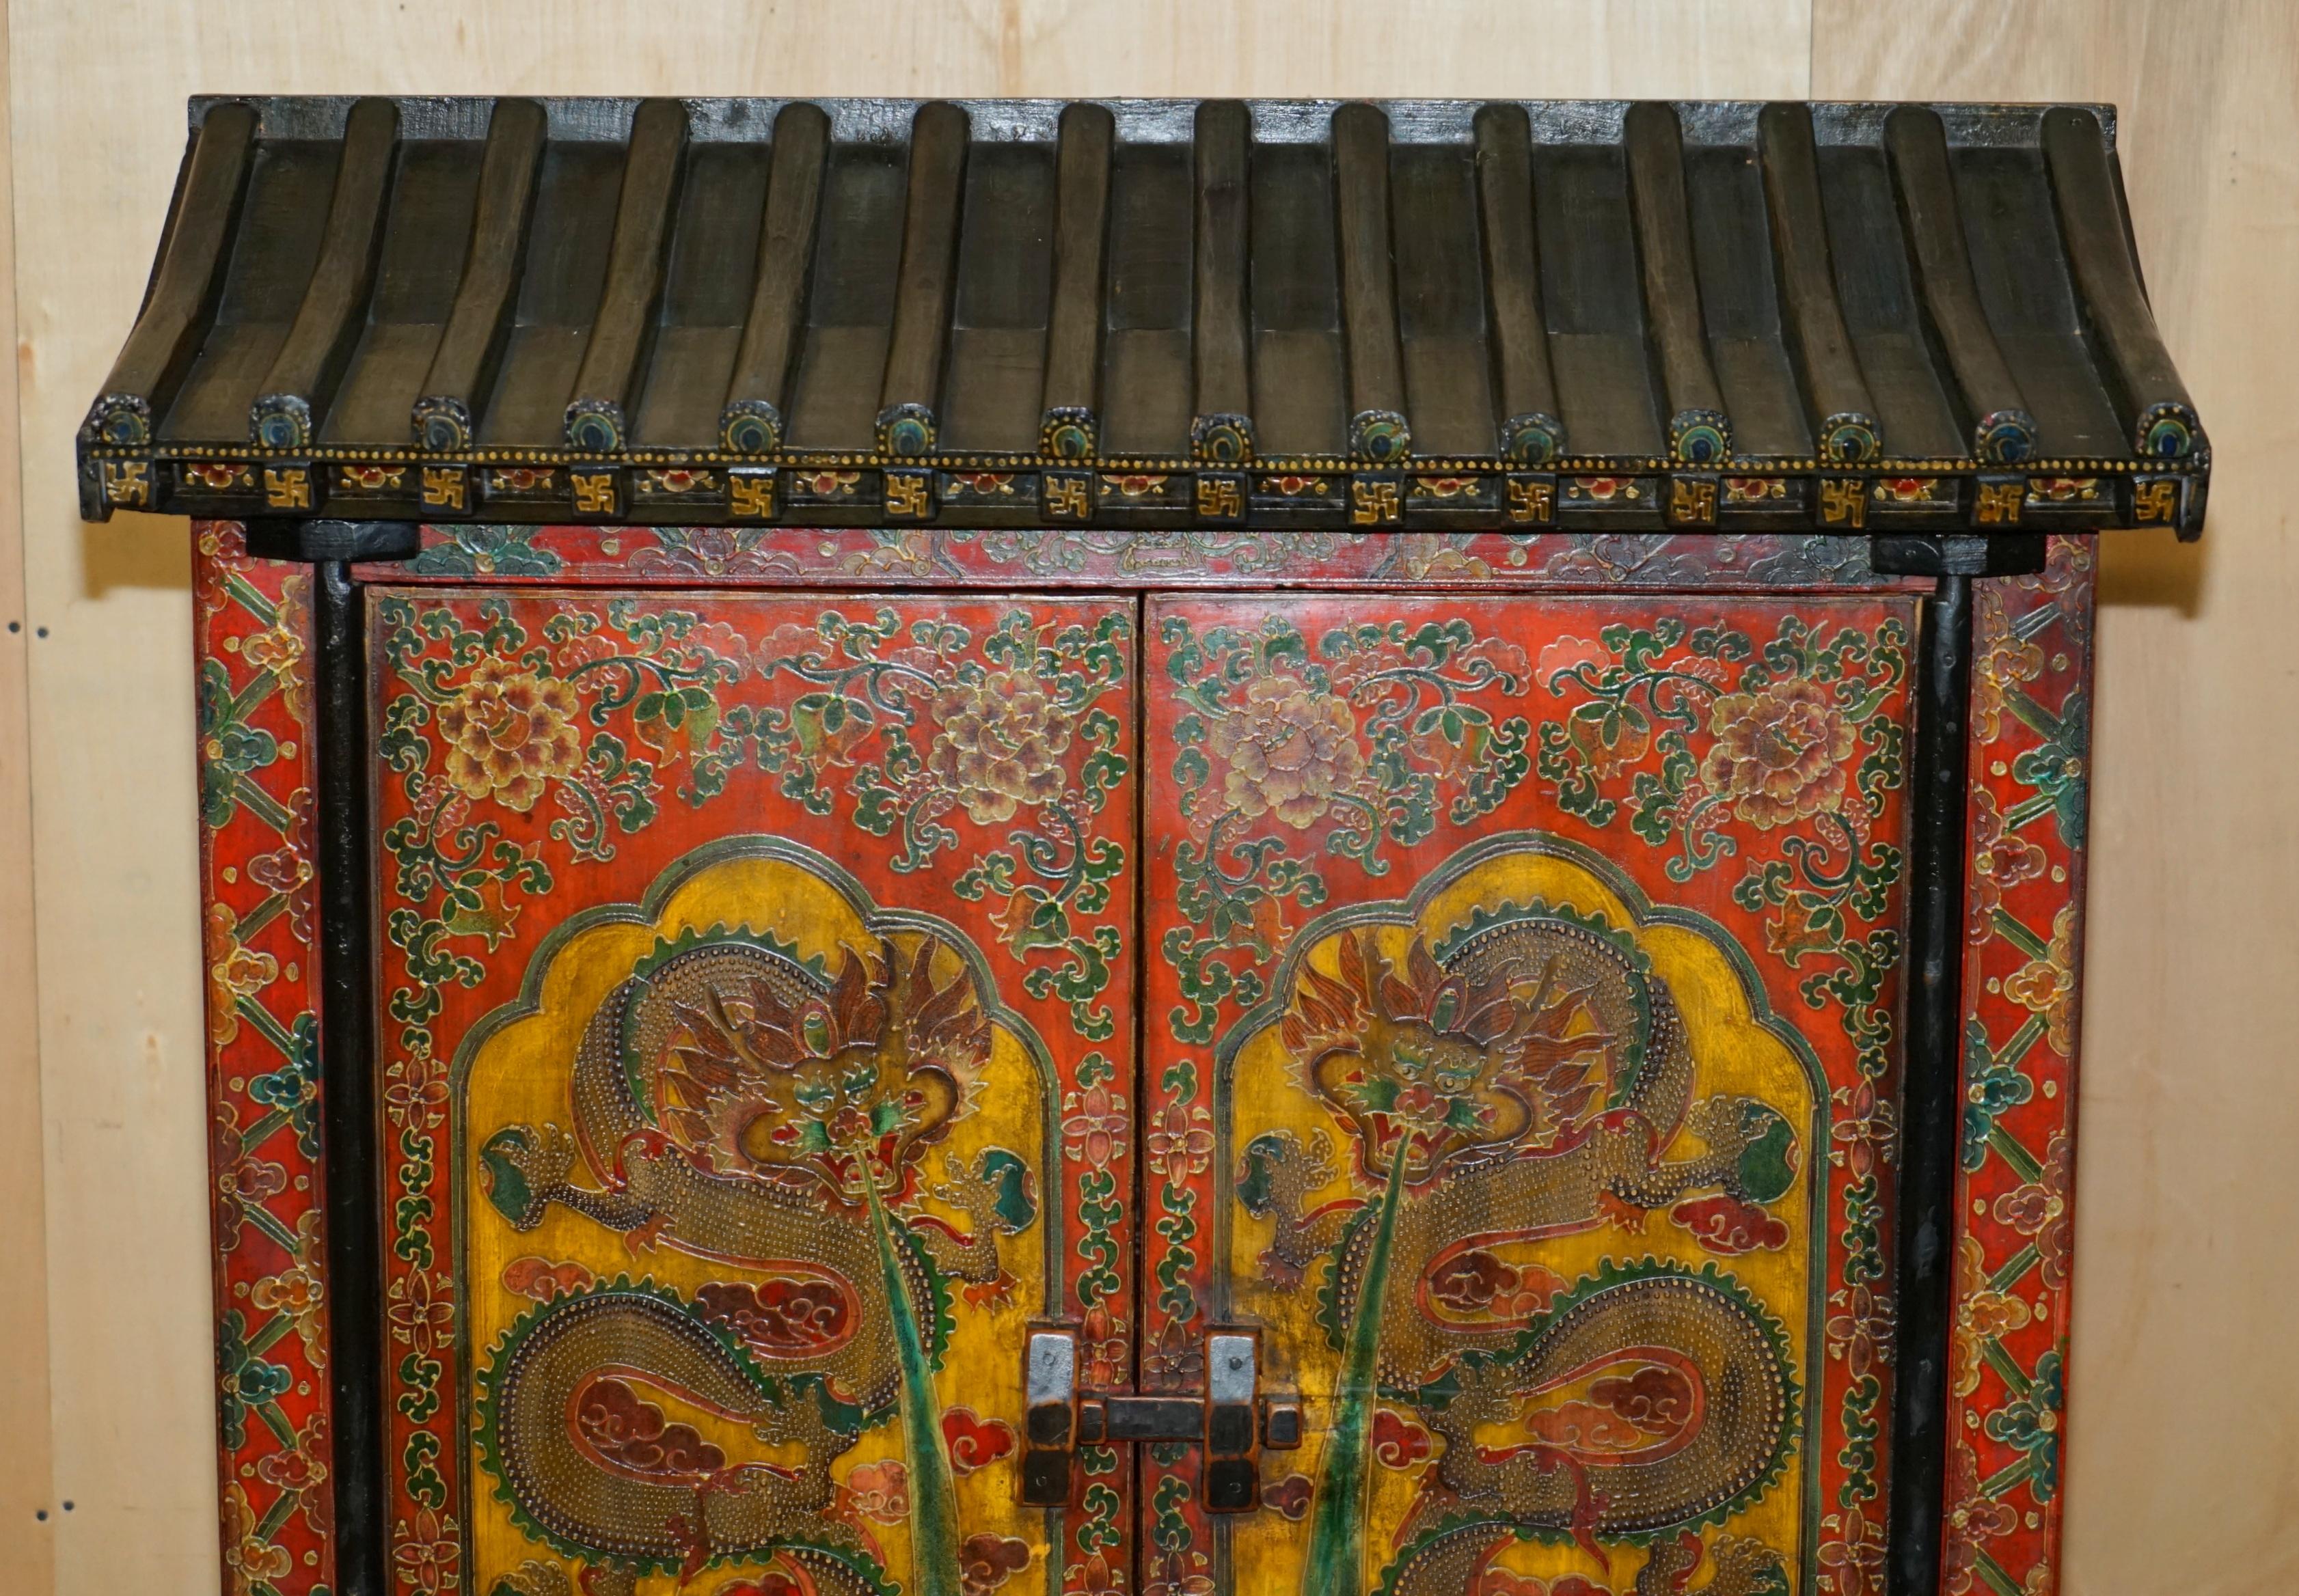 Royal House Antiques

The House of Antiques a le plaisir de proposer à la vente cette superbe armoire chinoise peinte à la main et surmontée d'une pagode, avec des tiroirs à la base.

Veuillez noter que les frais de livraison indiqués sont donnés à